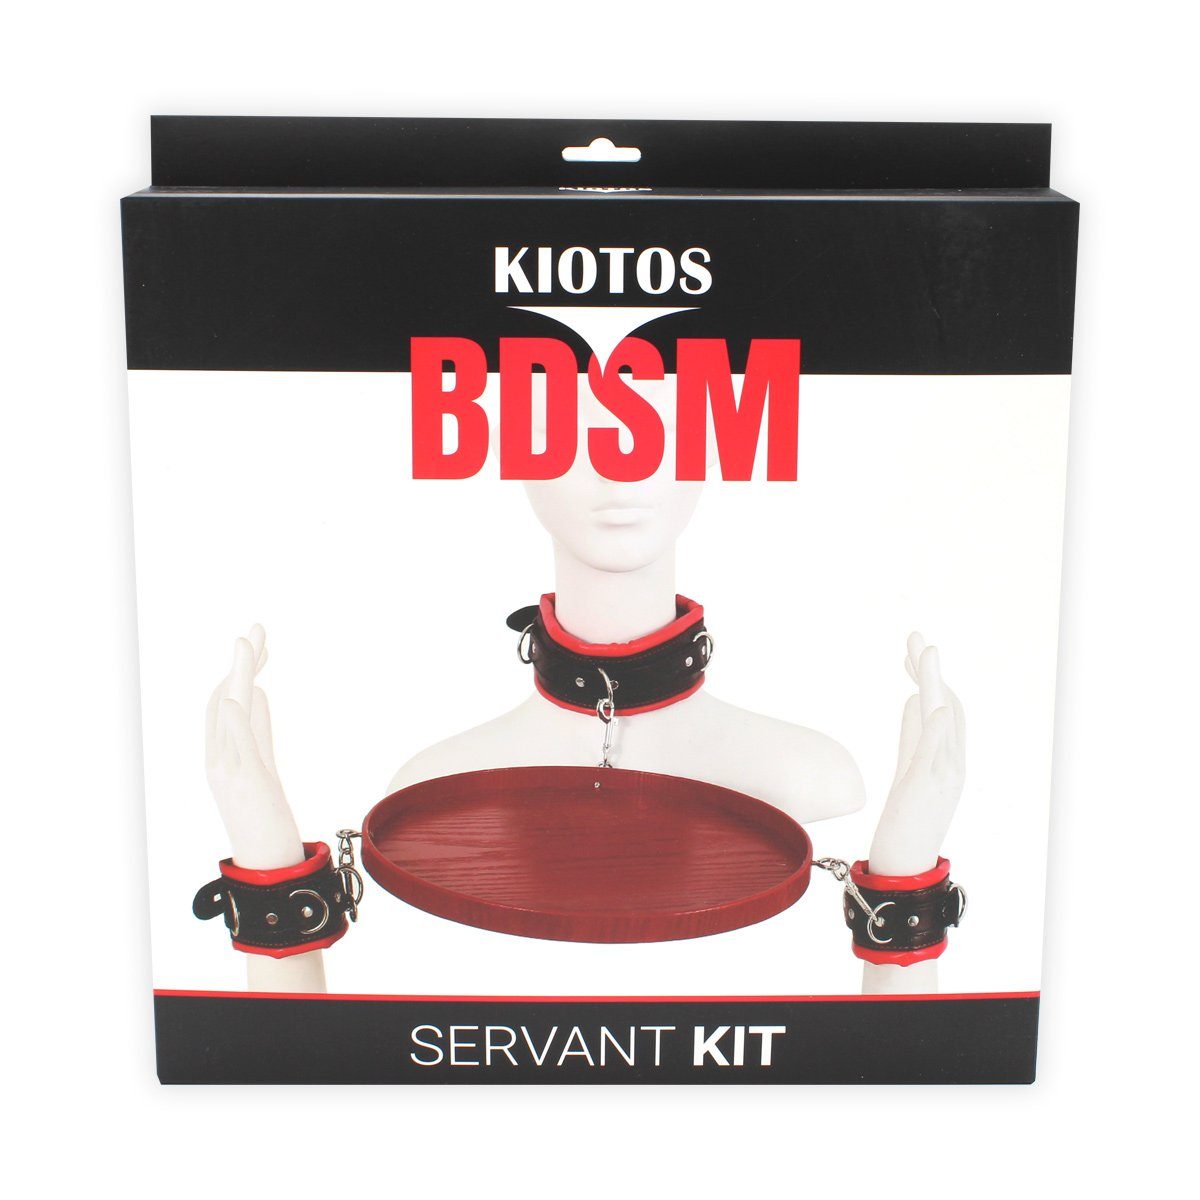 Kit Handfesseln KIOTOS BDSM Servant Kiotos